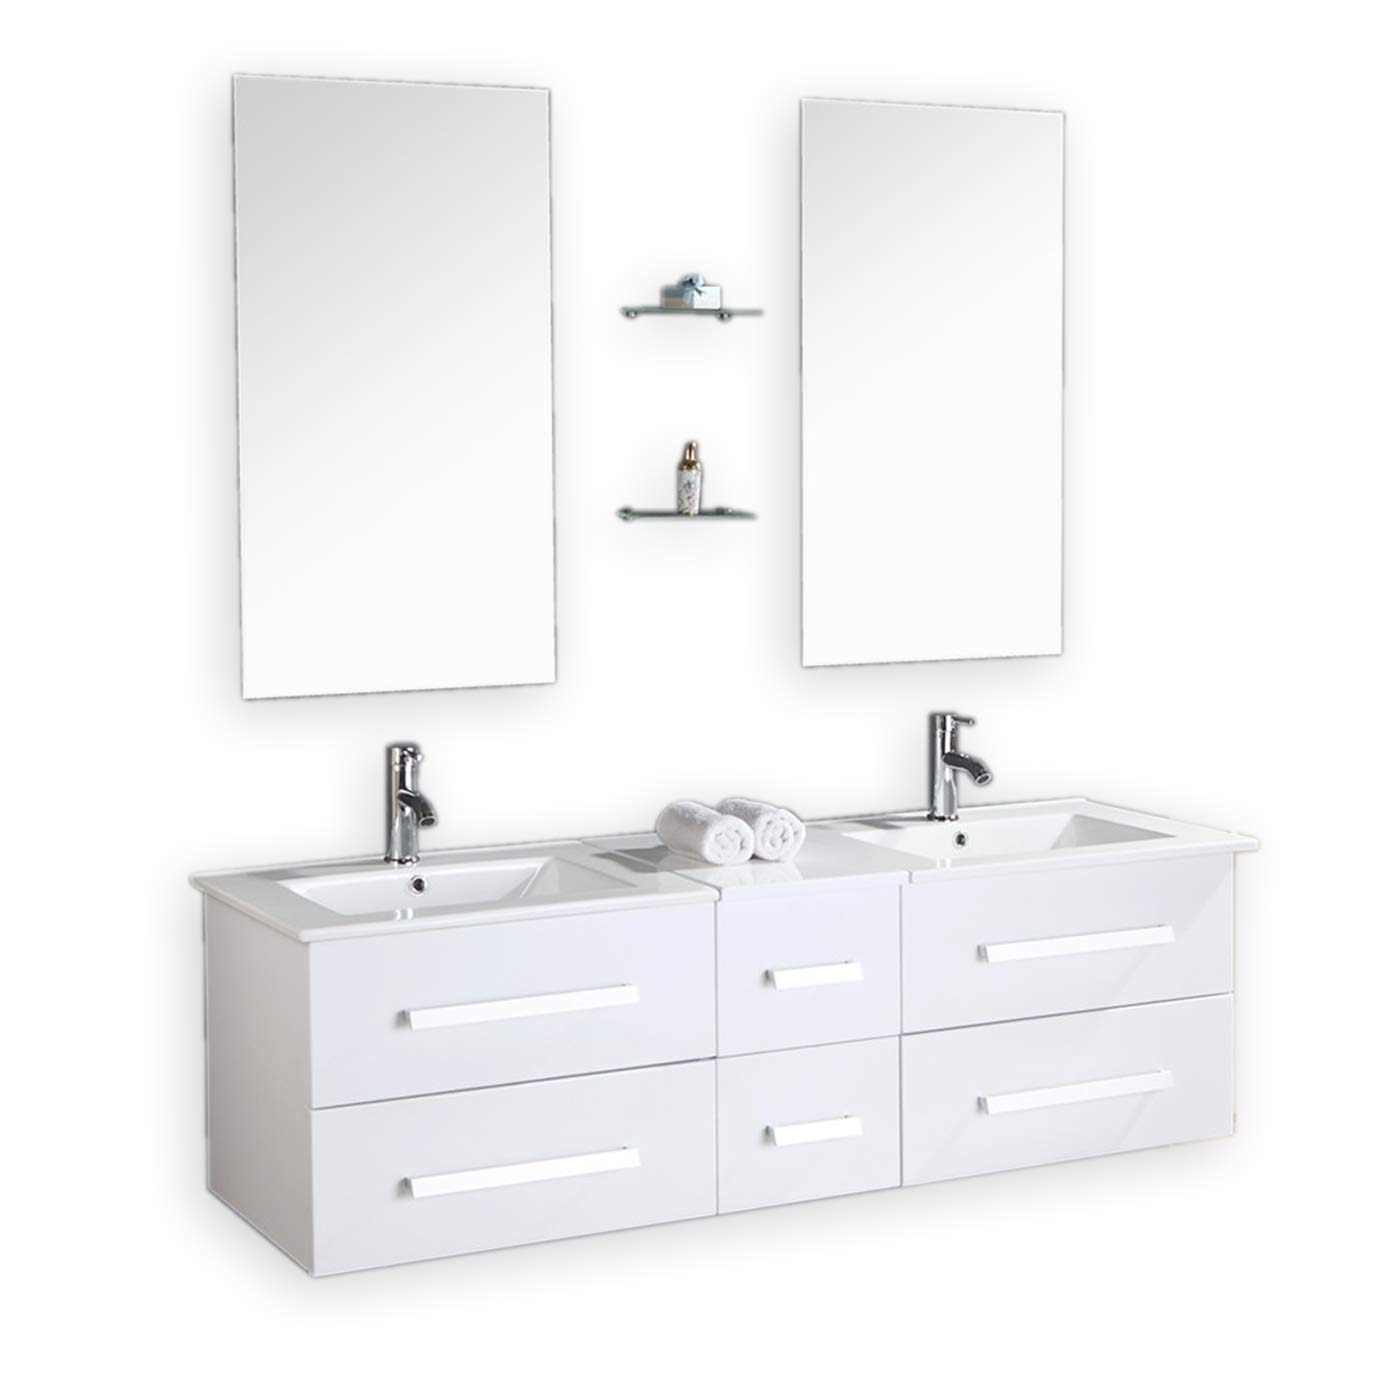 Badmöbel Badezimmermöbel Modell White Rome 150 cm Badezimmer Waschbecken Waschtisch Schrank Spiegel Set